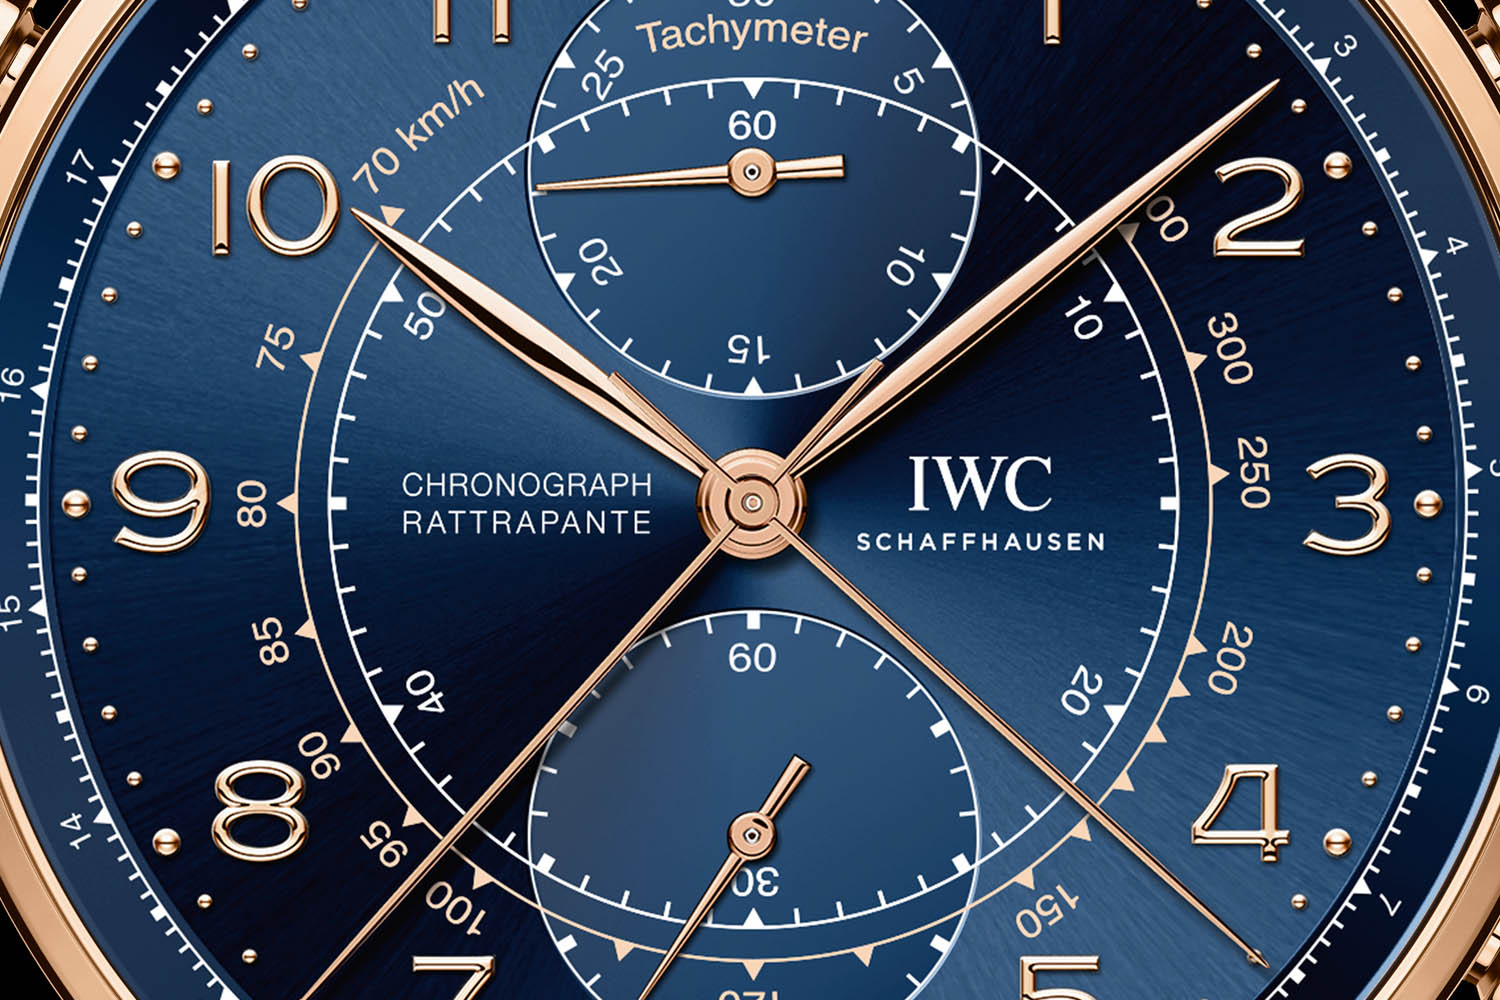 IWC Portugieser Chronograph Rattrapante replica